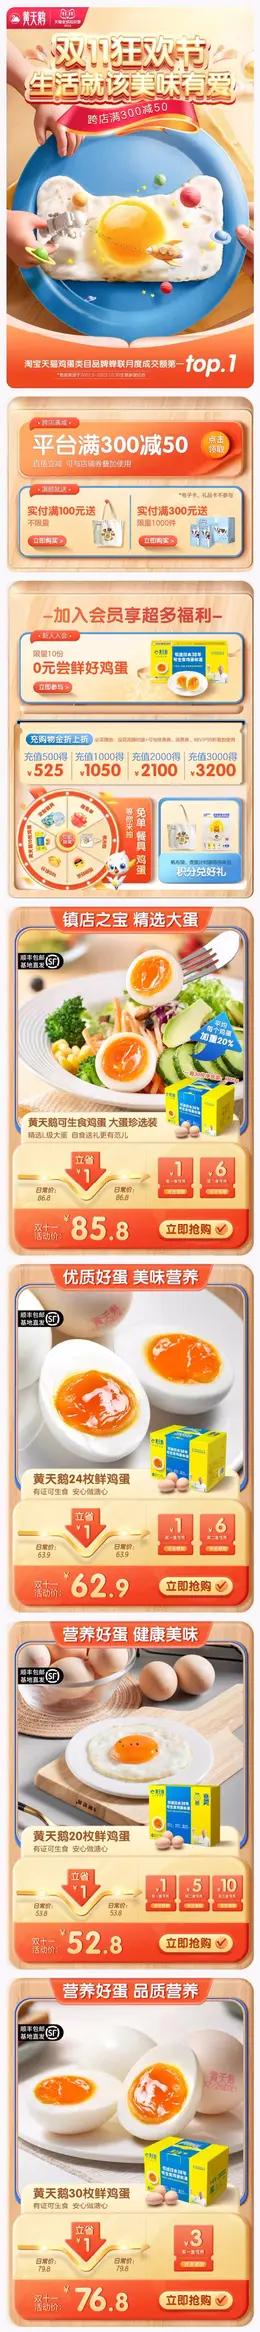 黄天鹅 食品 零食 双11预售 双十一来啦 手机端 M端活动首页设计